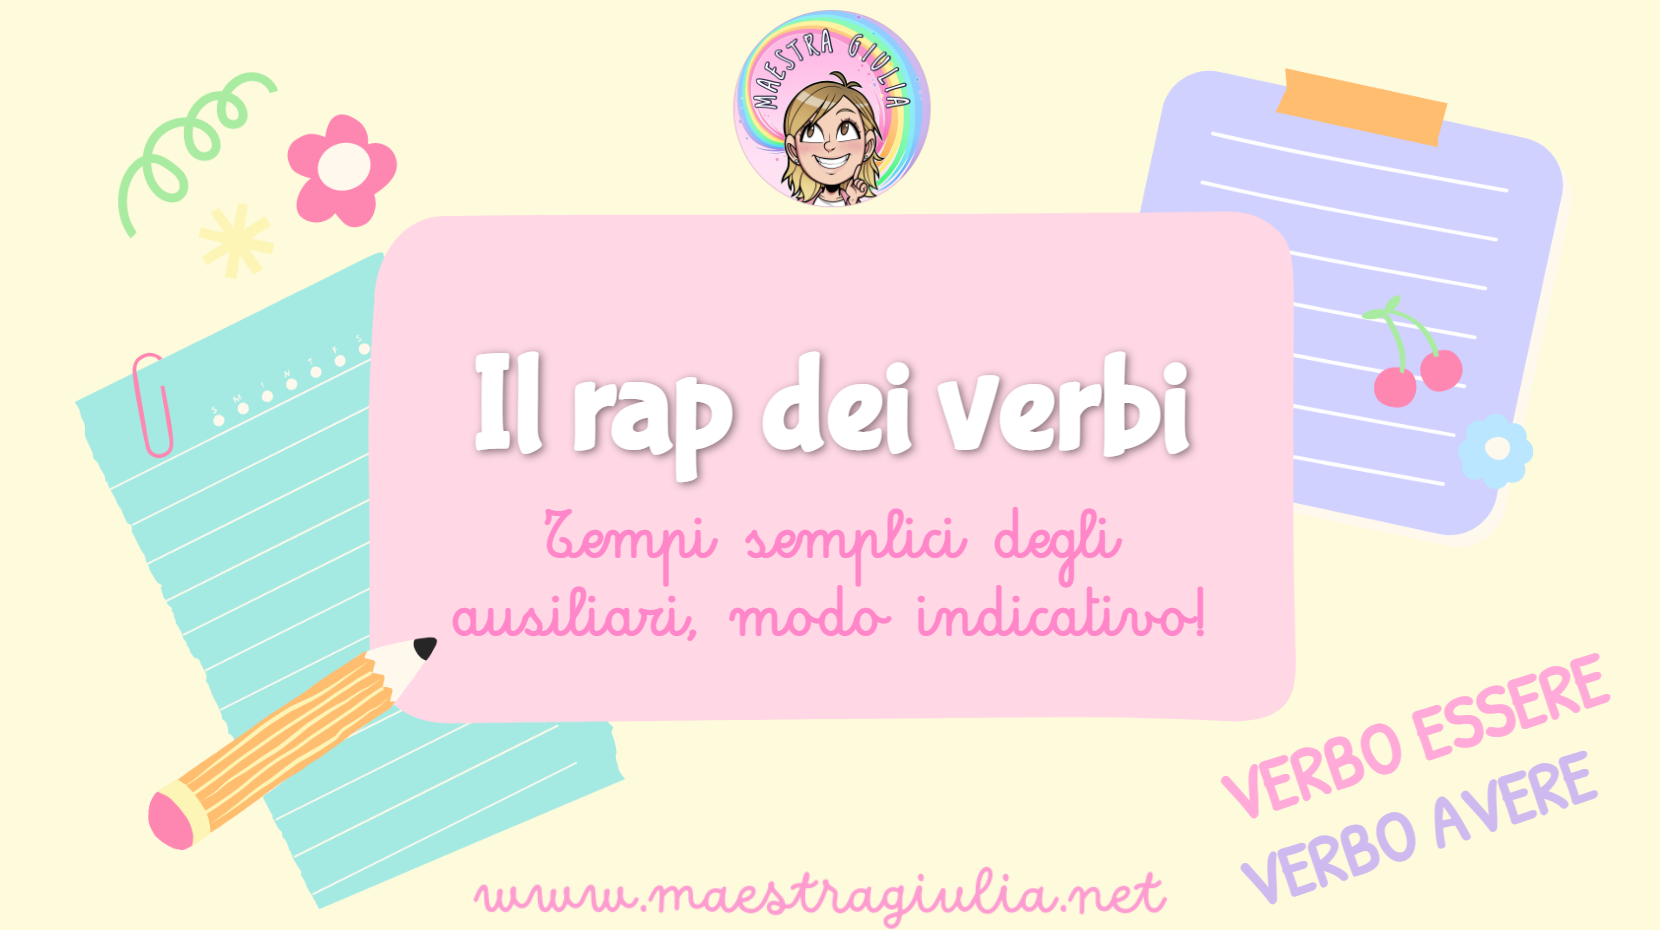 Il rap dei verbi: un’attività per imparare il modo indicativo in modo divertente!